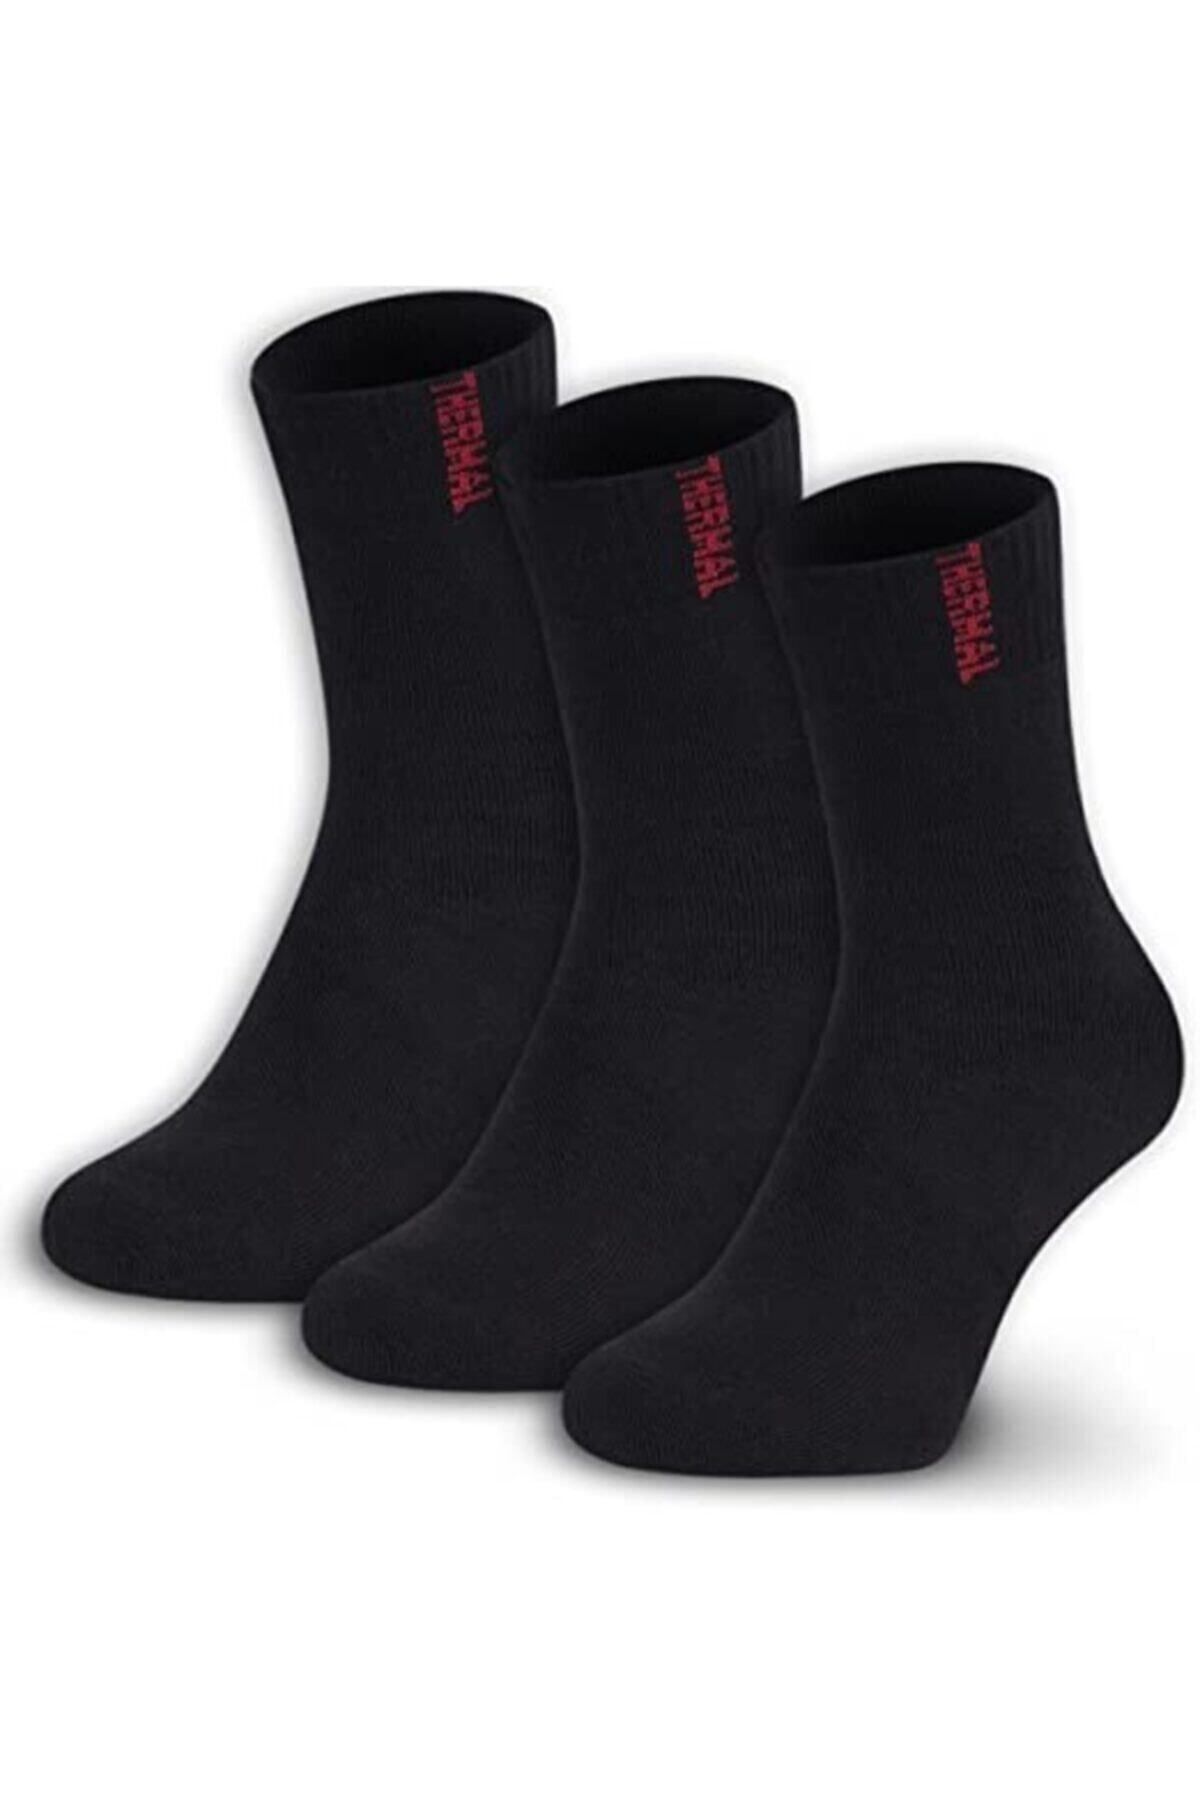 shoticaret Winter Thick Thermal Socks, For Women And Men, Pack Of 3, Warm  Socks - Trendyol